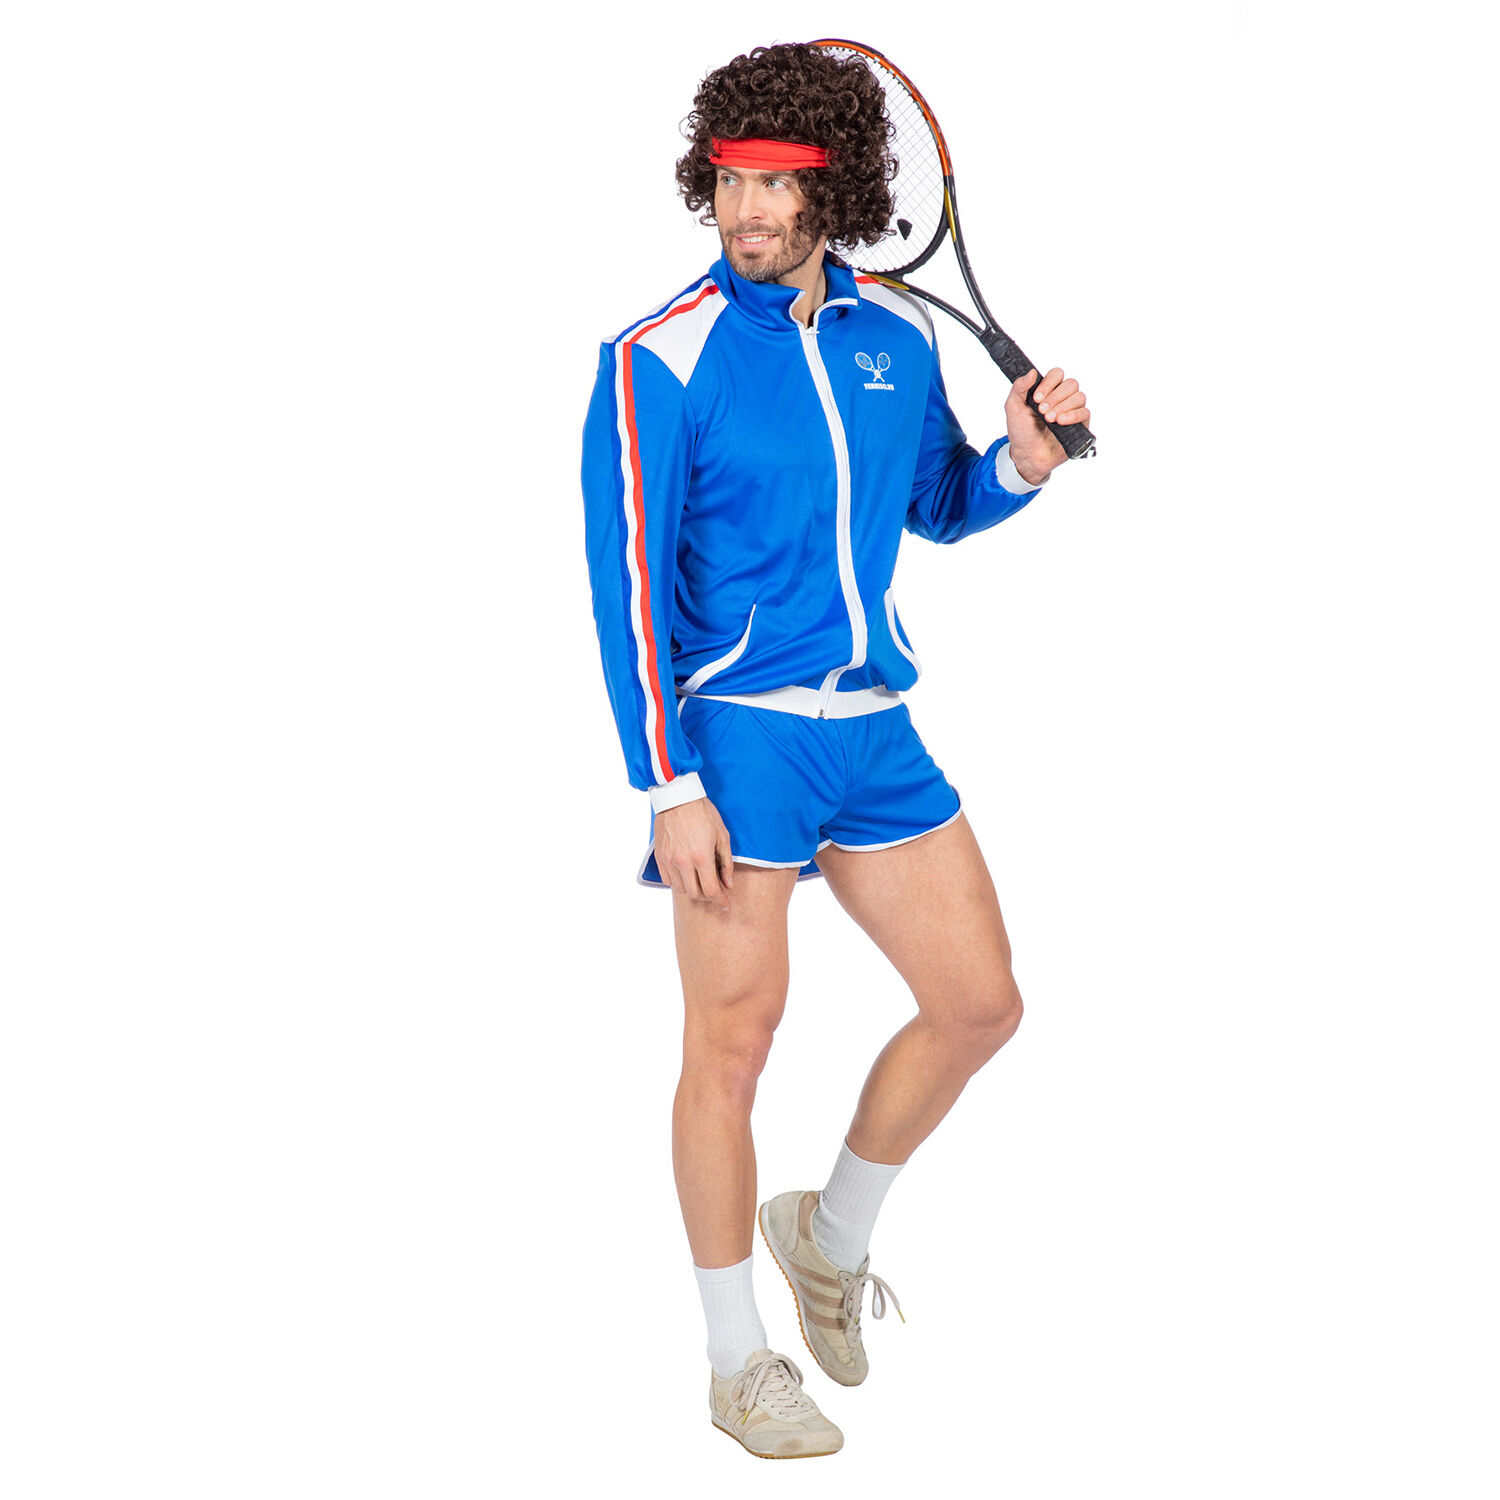 NEU Herren-Kostüm Tennis-Spieler, Jacke und kurze Hose, Gr. 48 Bild 2